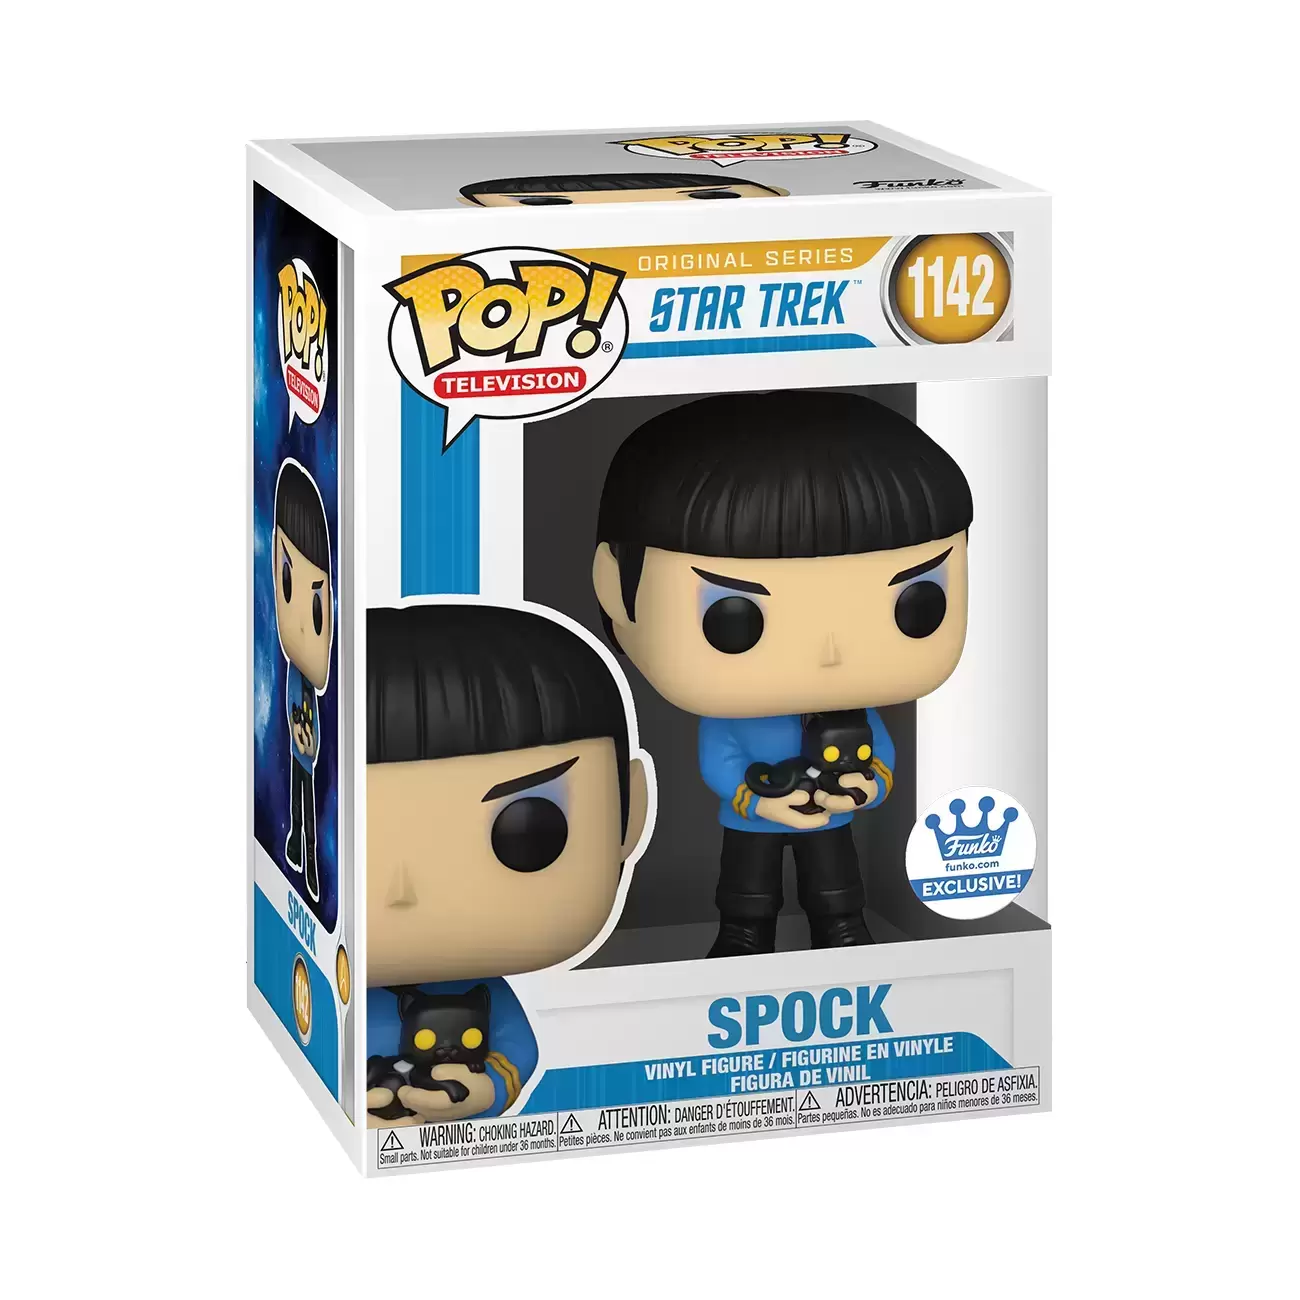 POP! Star Trek - Star Trek - Spock